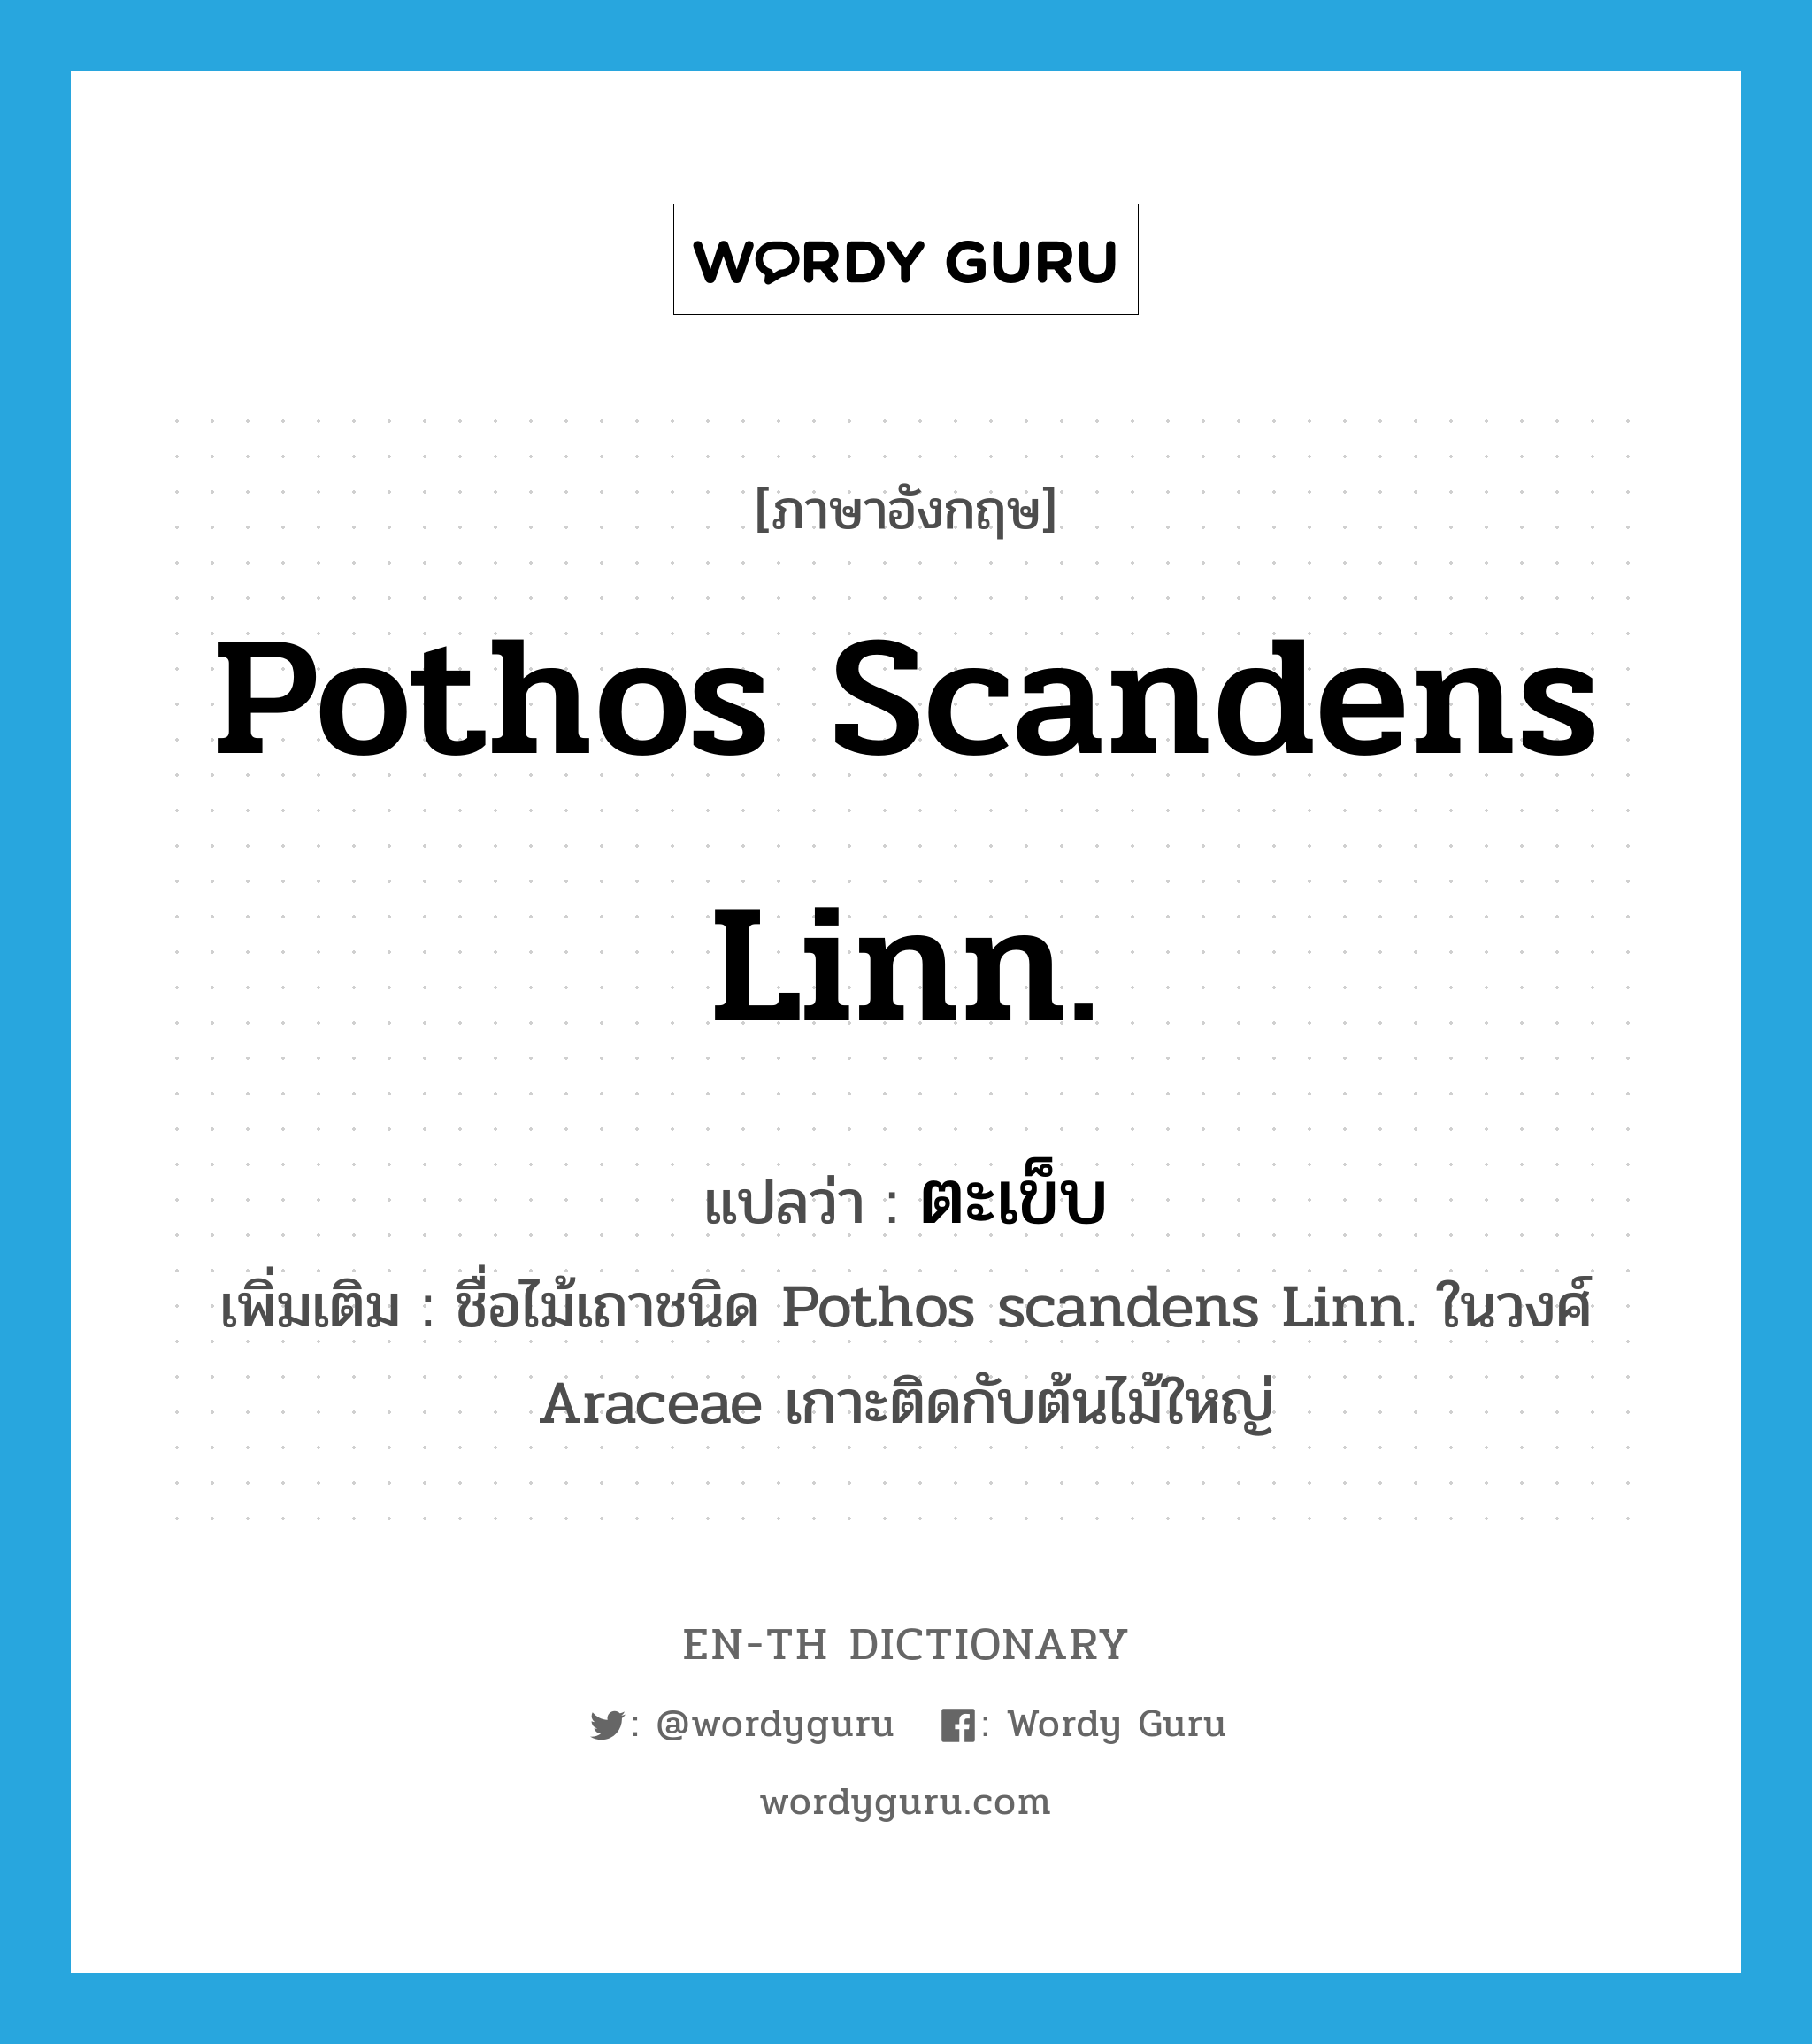 Pothos scandens Linn. แปลว่า?, คำศัพท์ภาษาอังกฤษ Pothos scandens Linn. แปลว่า ตะเข็บ ประเภท N เพิ่มเติม ชื่อไม้เถาชนิด Pothos scandens Linn. ในวงศ์ Araceae เกาะติดกับต้นไม้ใหญ่ หมวด N